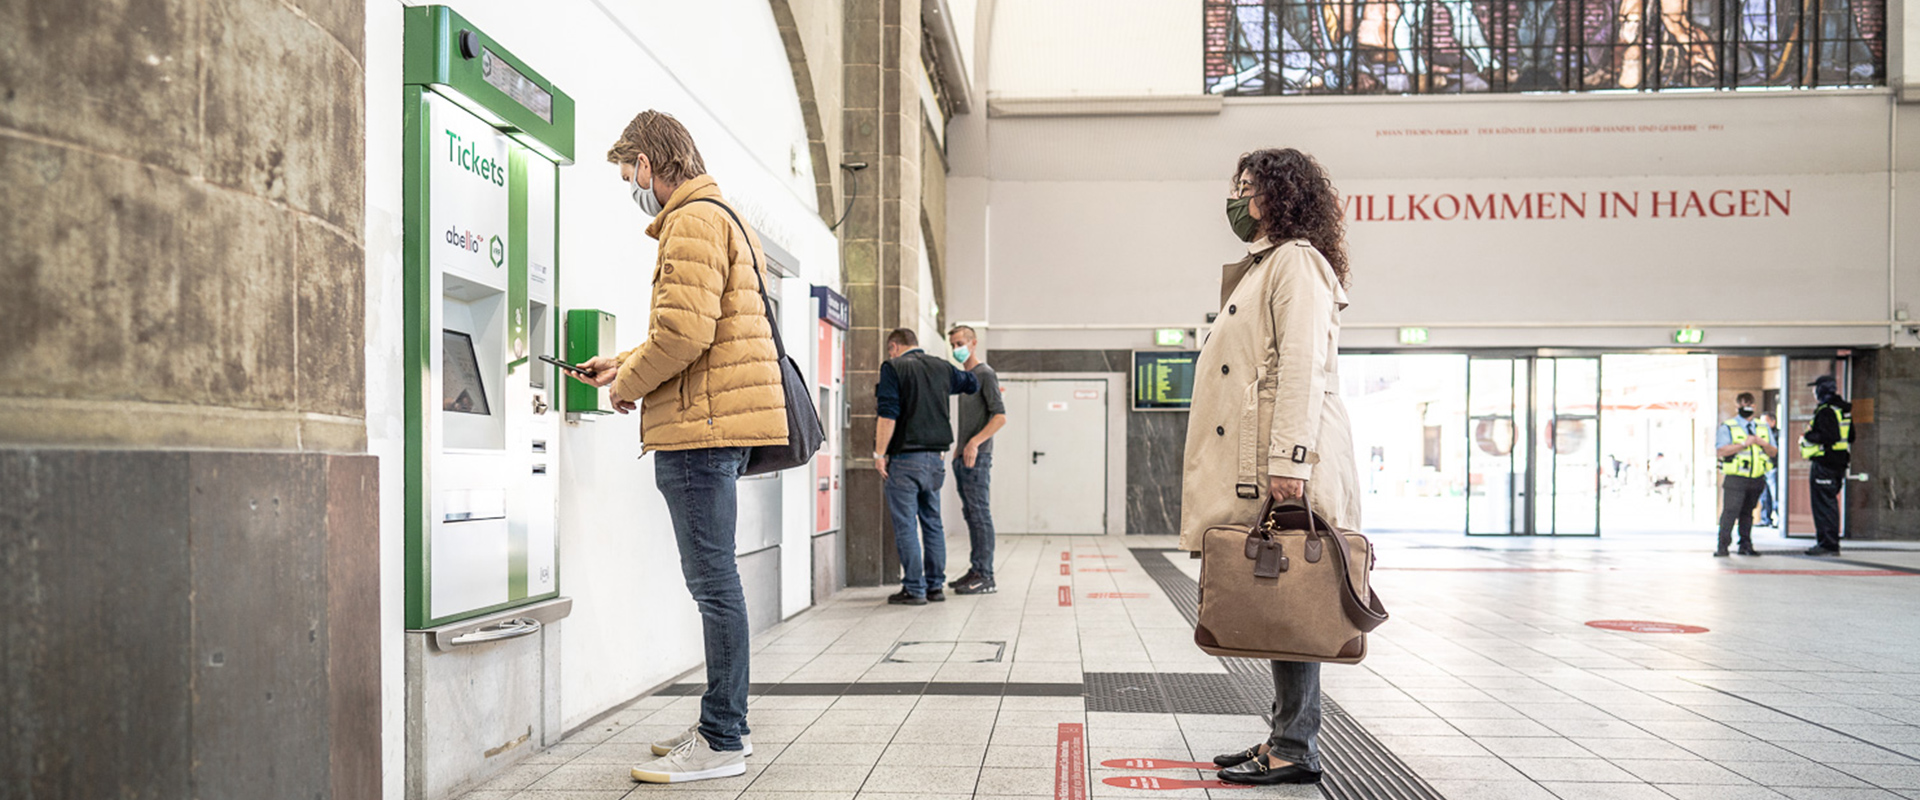 Ein Mann steht in einer Bahnhofshalle an einem Ticketautomaten. Hinter ihm wartet eine Frau, die sich auch ein Ticket kaufen möchte.